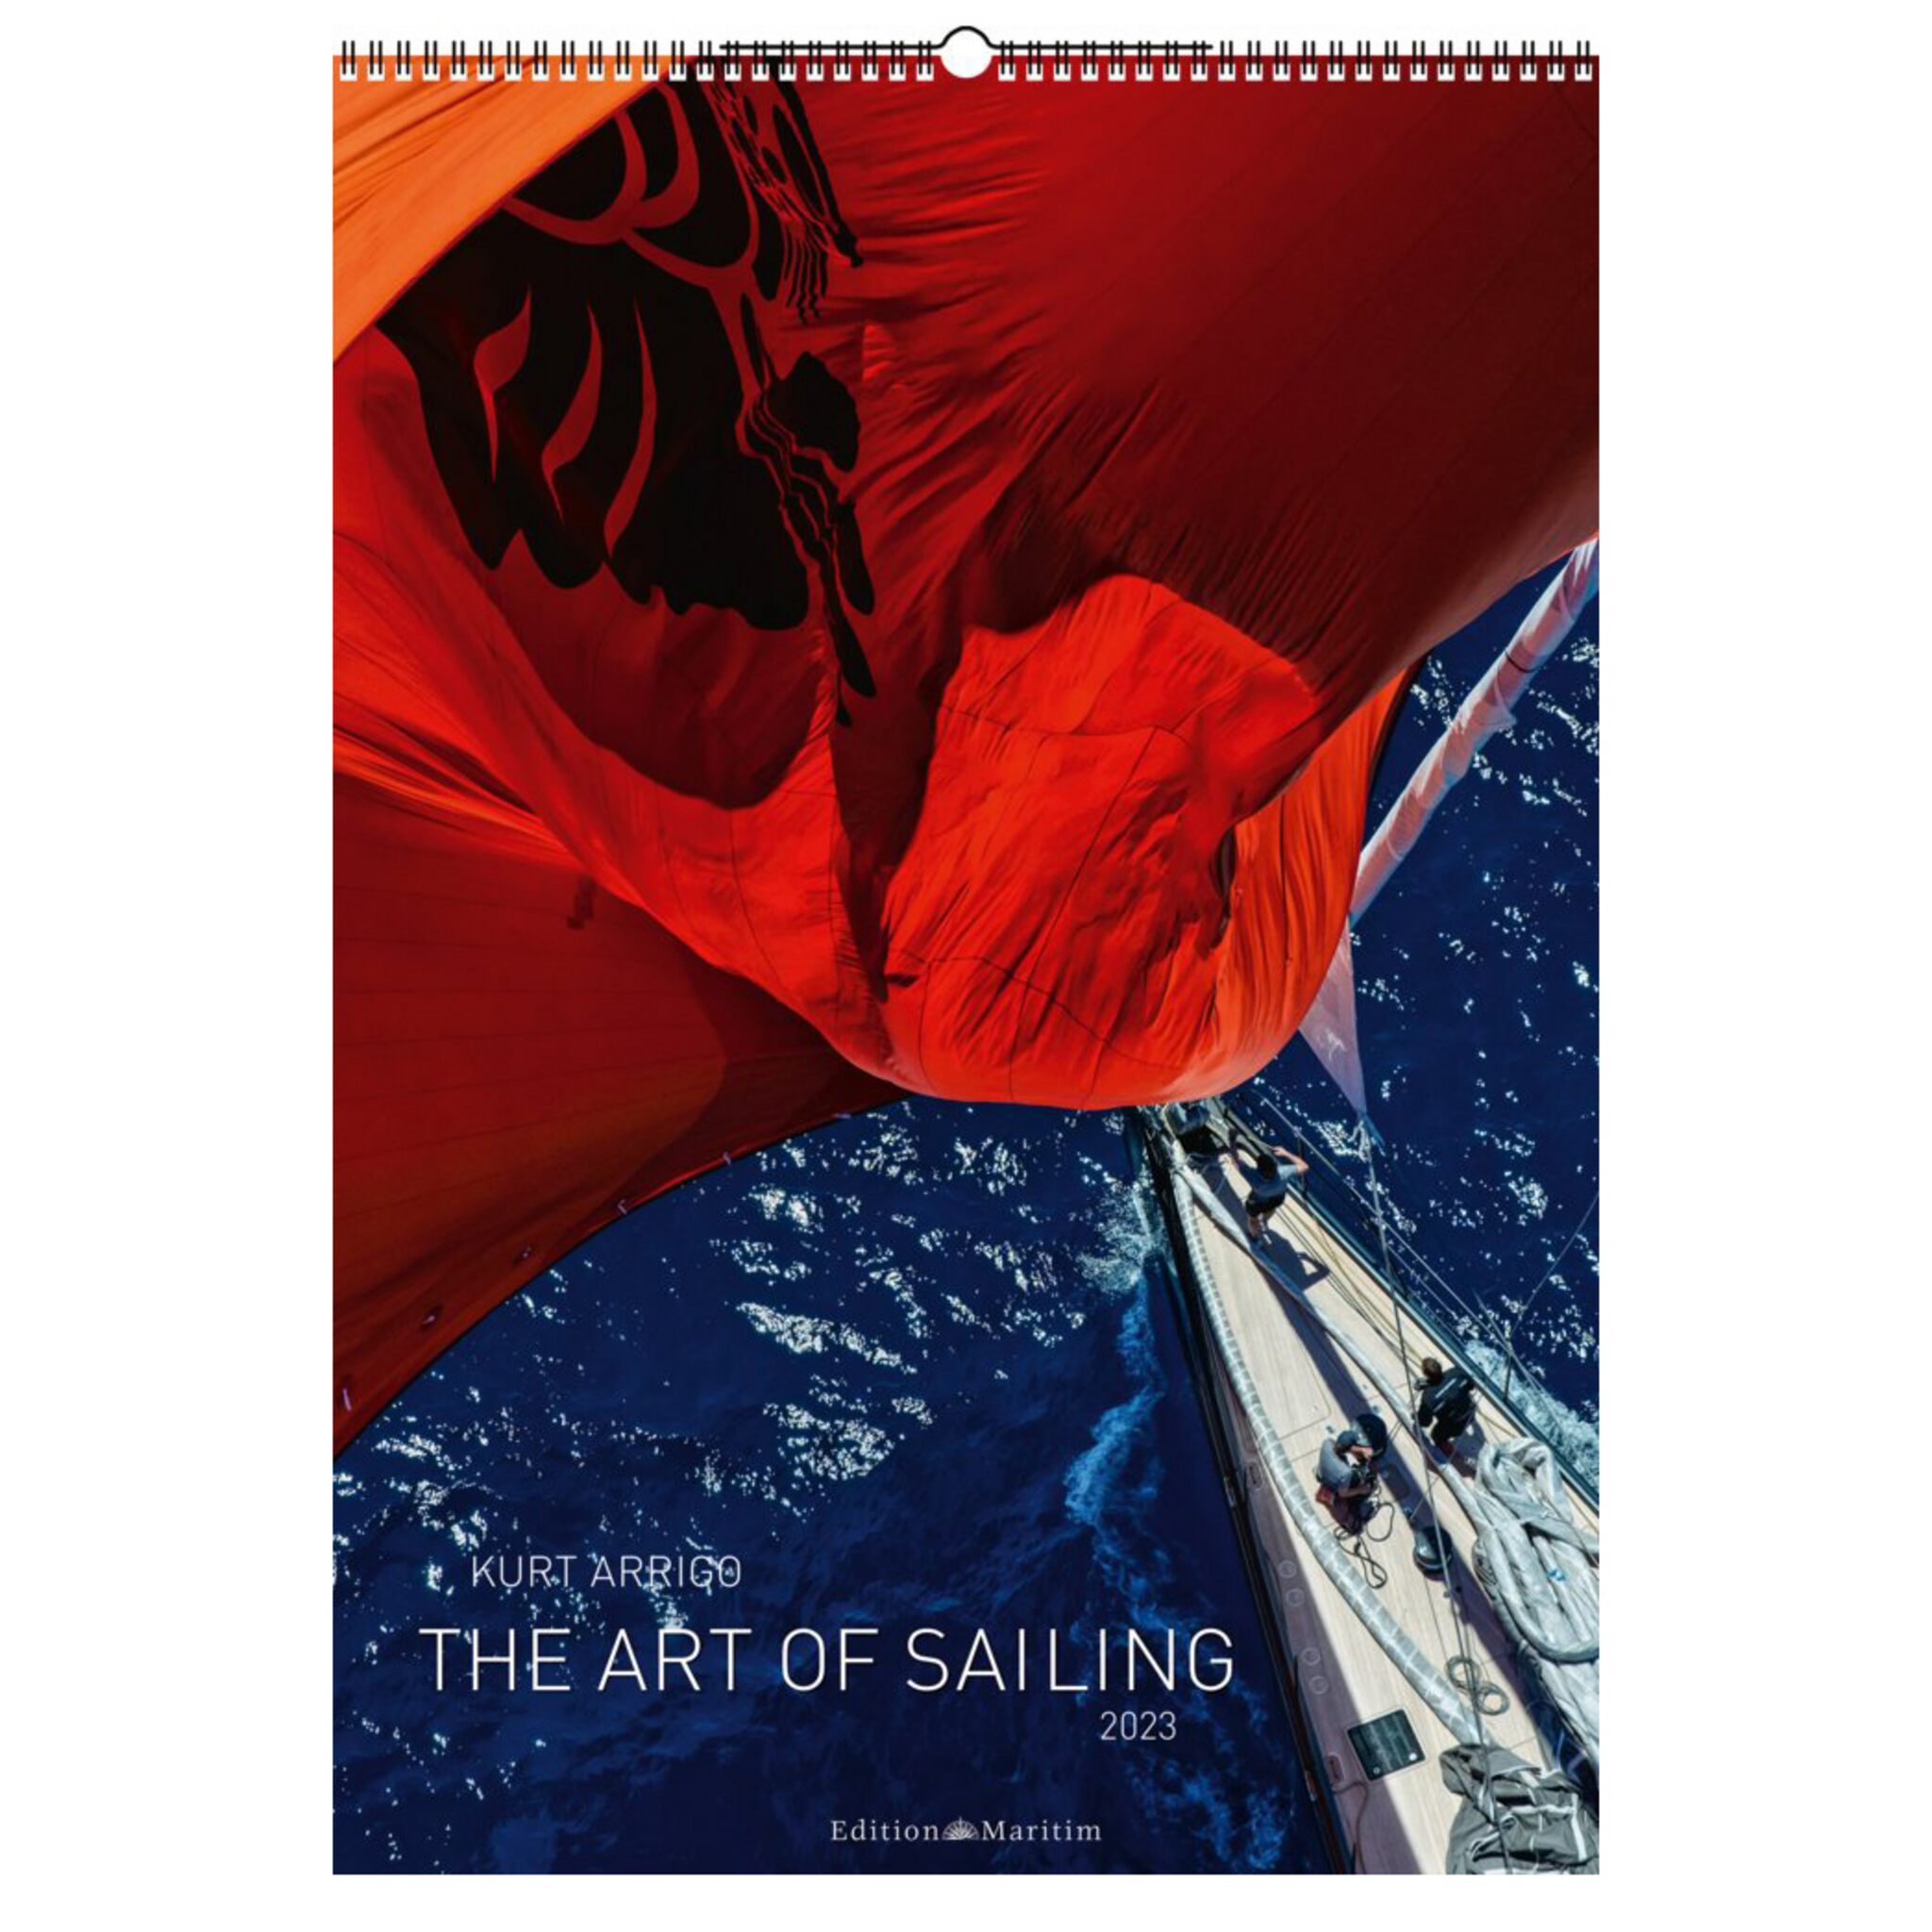 Photo calendar The Art of Sailing 2023 by Kurt Arrigo